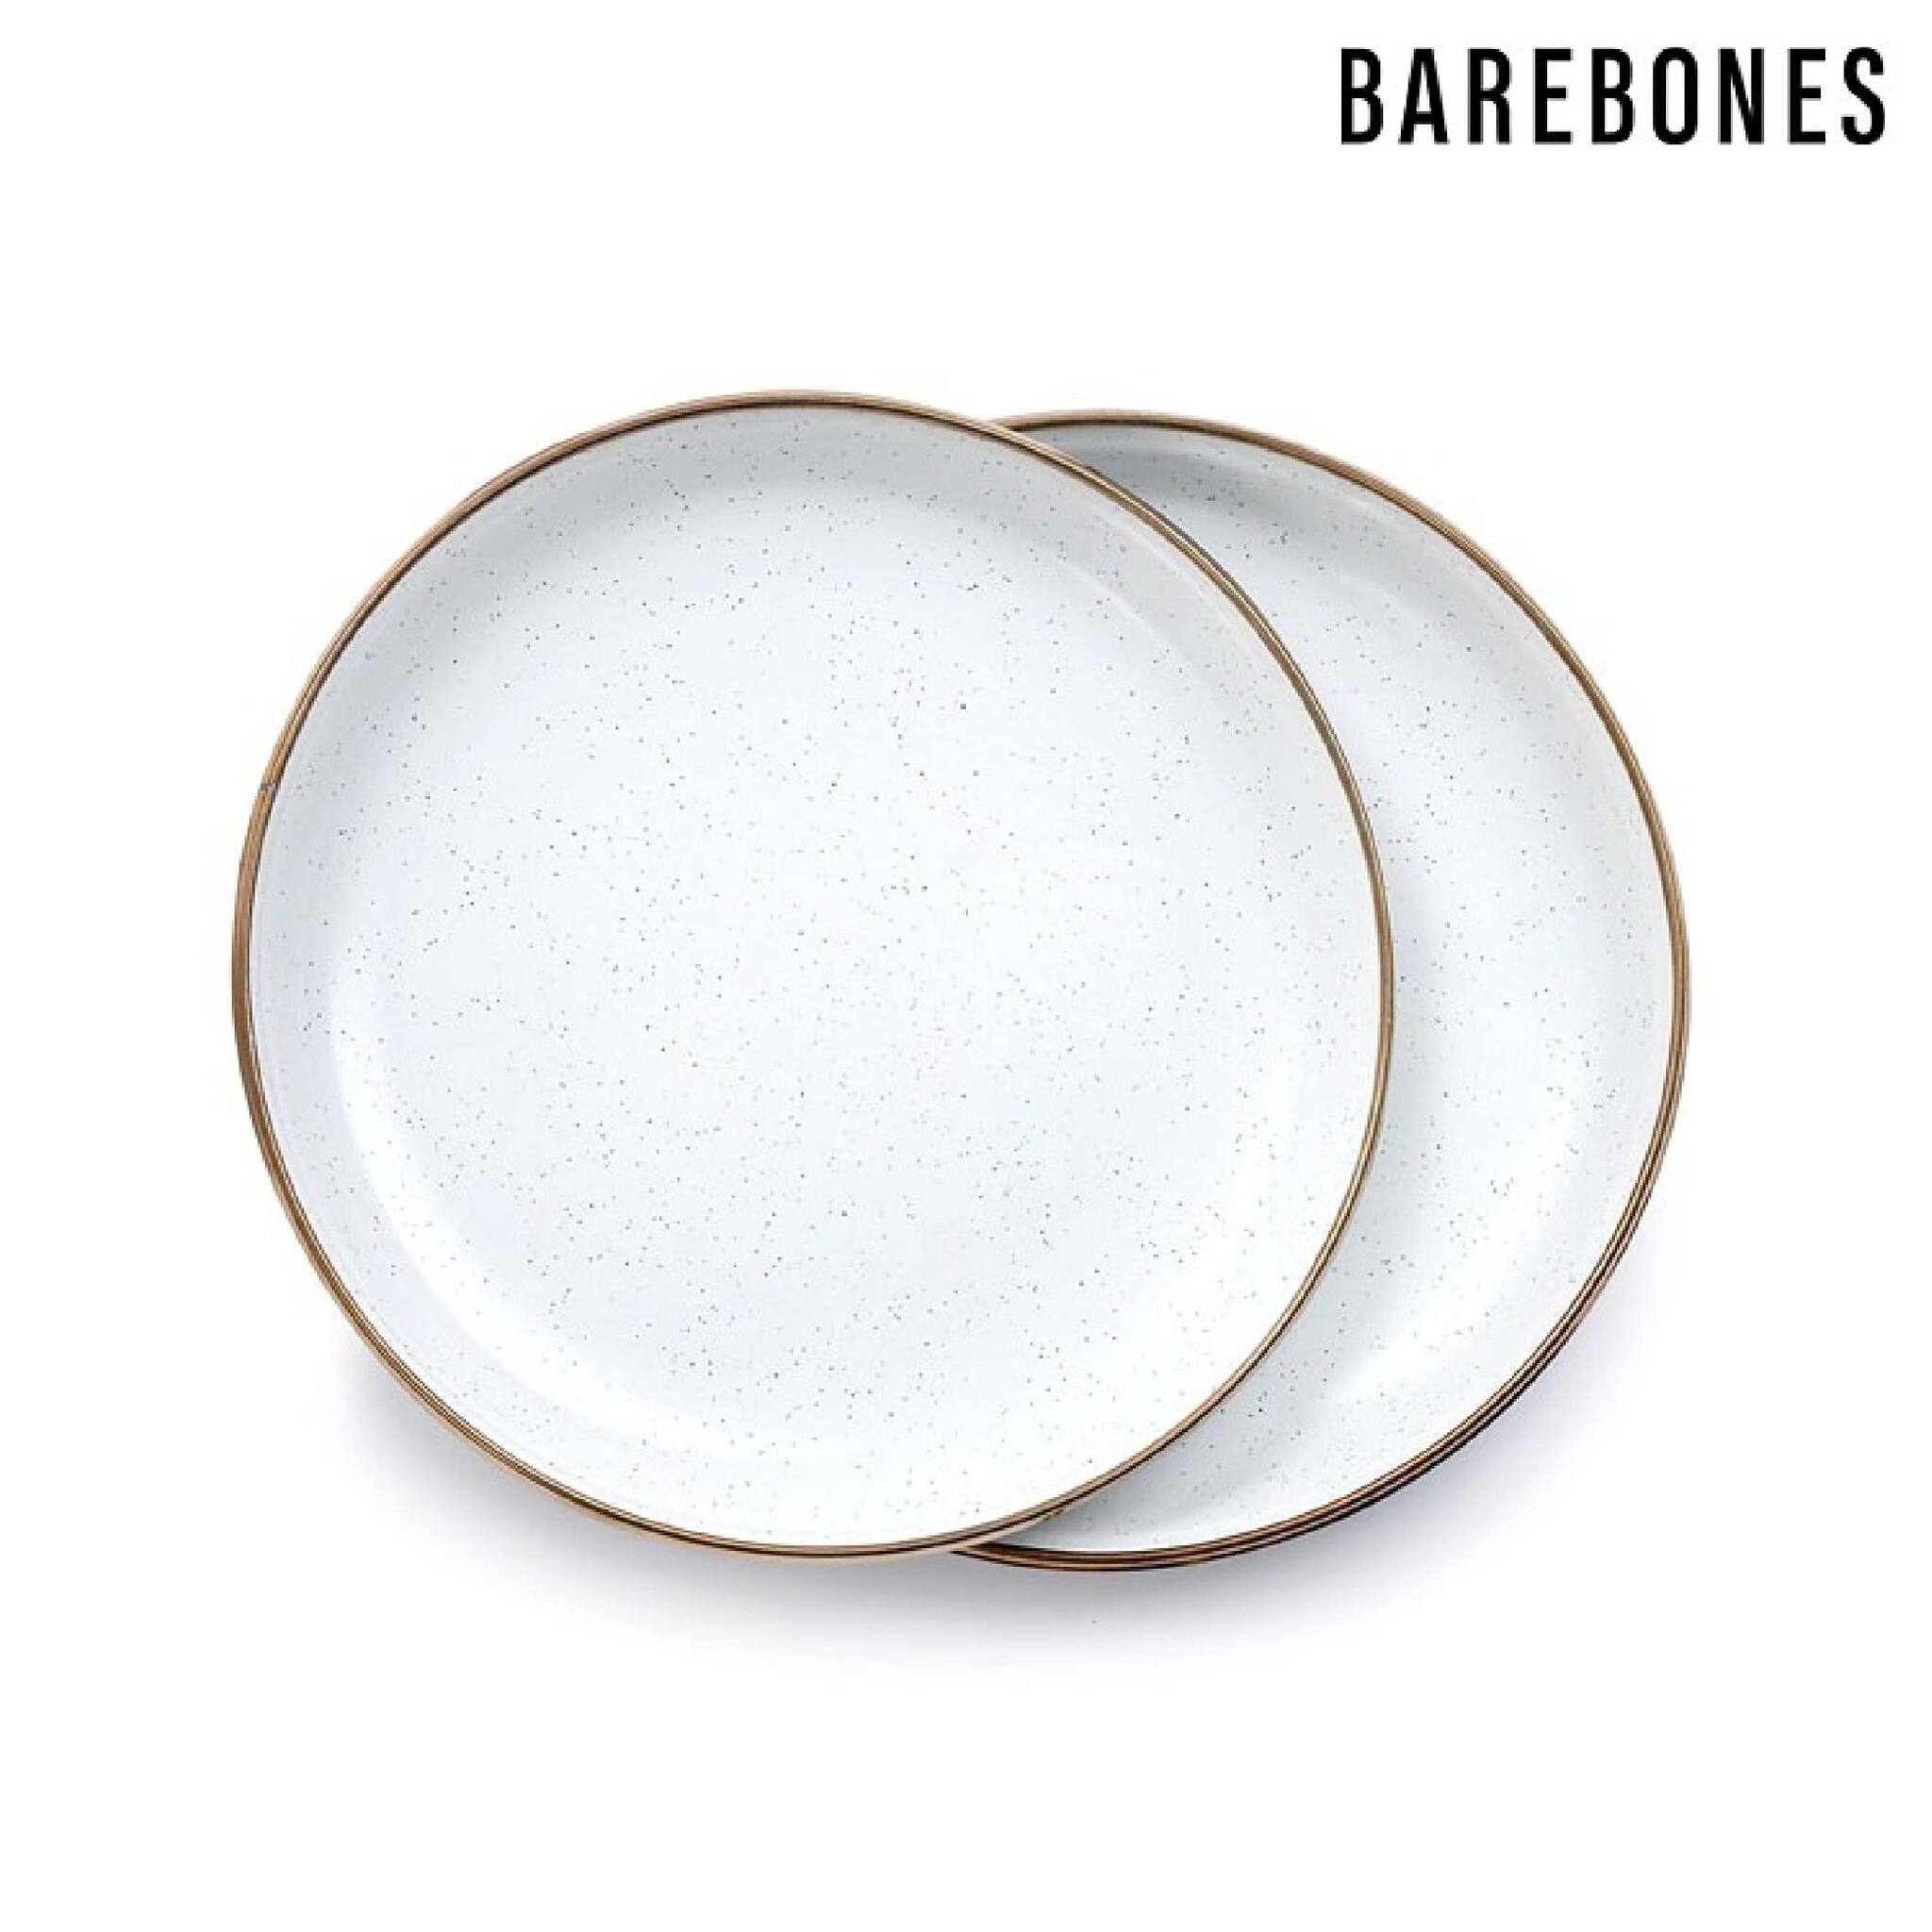 Barebones 琺瑯沙拉盤組 兩入一組 蛋殼白 CKW-392